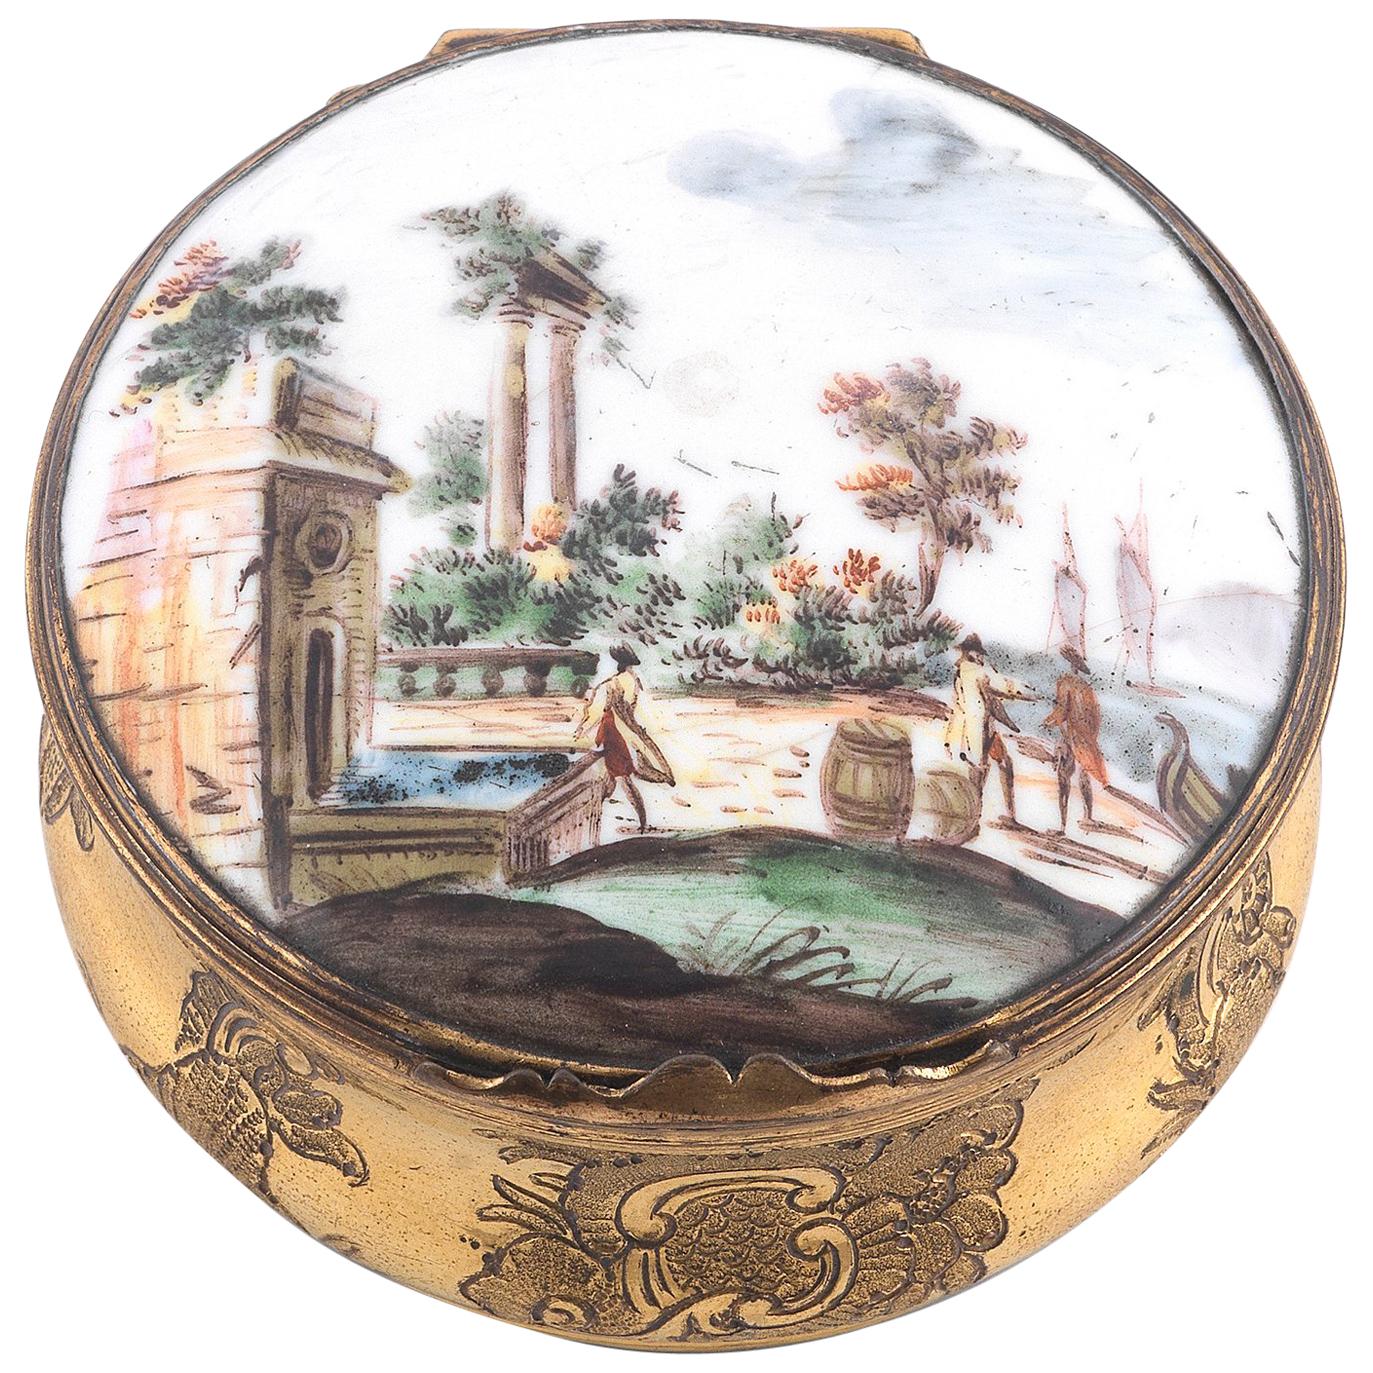 Tabatière de table circulaire en métal émaillé et doré de la fin du XVIIIe siècle